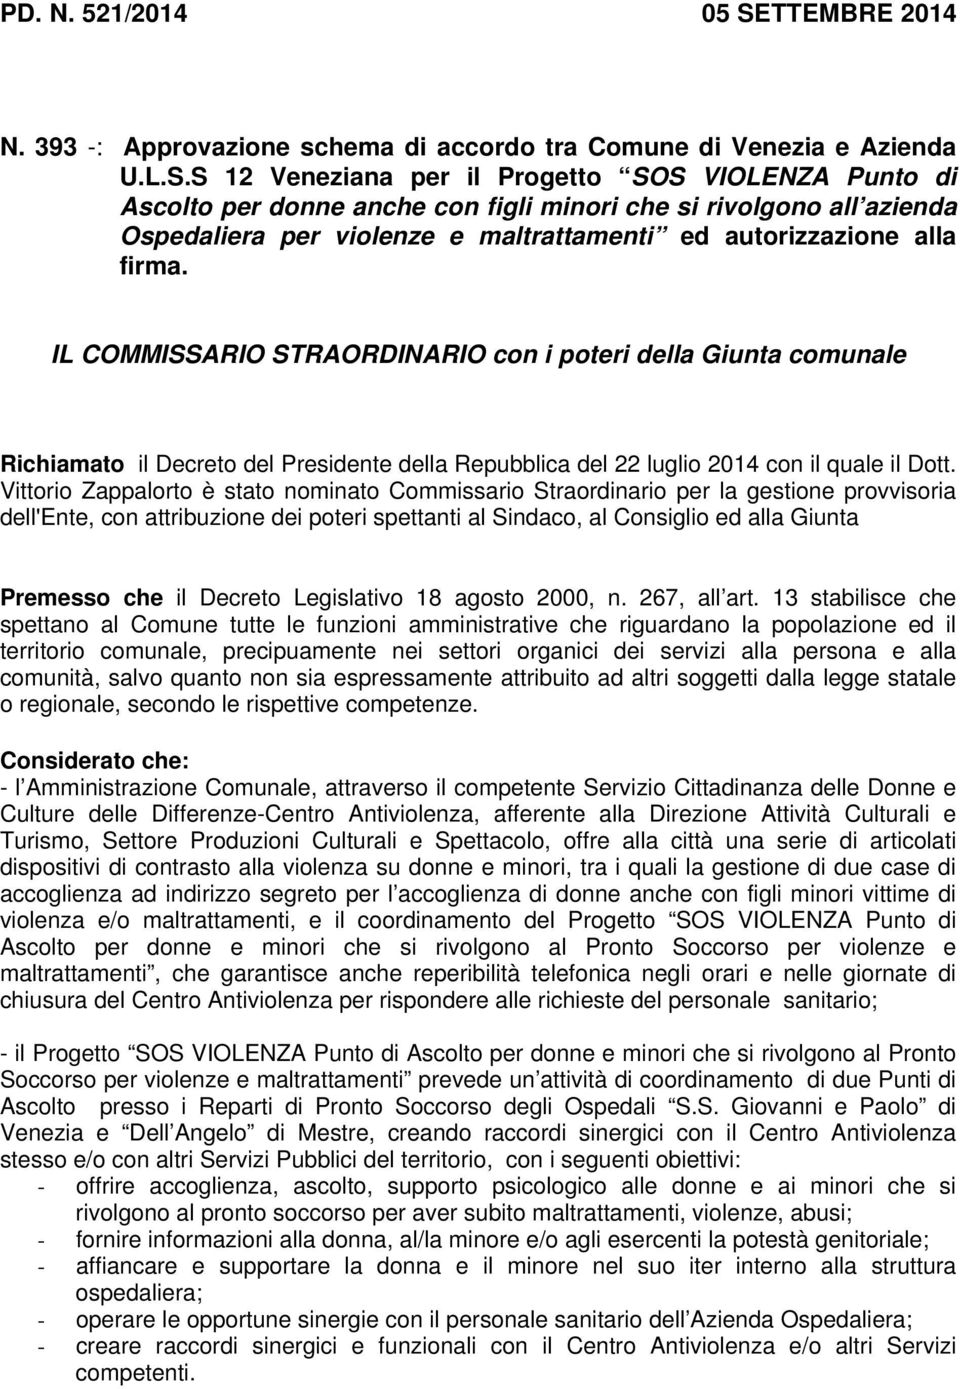 S 12 Veneziana per il Progetto SOS VIOLENZA Punto di Ascolto per donne anche con figli minori che si rivolgono all azienda Ospedaliera per violenze e maltrattamenti ed autorizzazione alla firma.